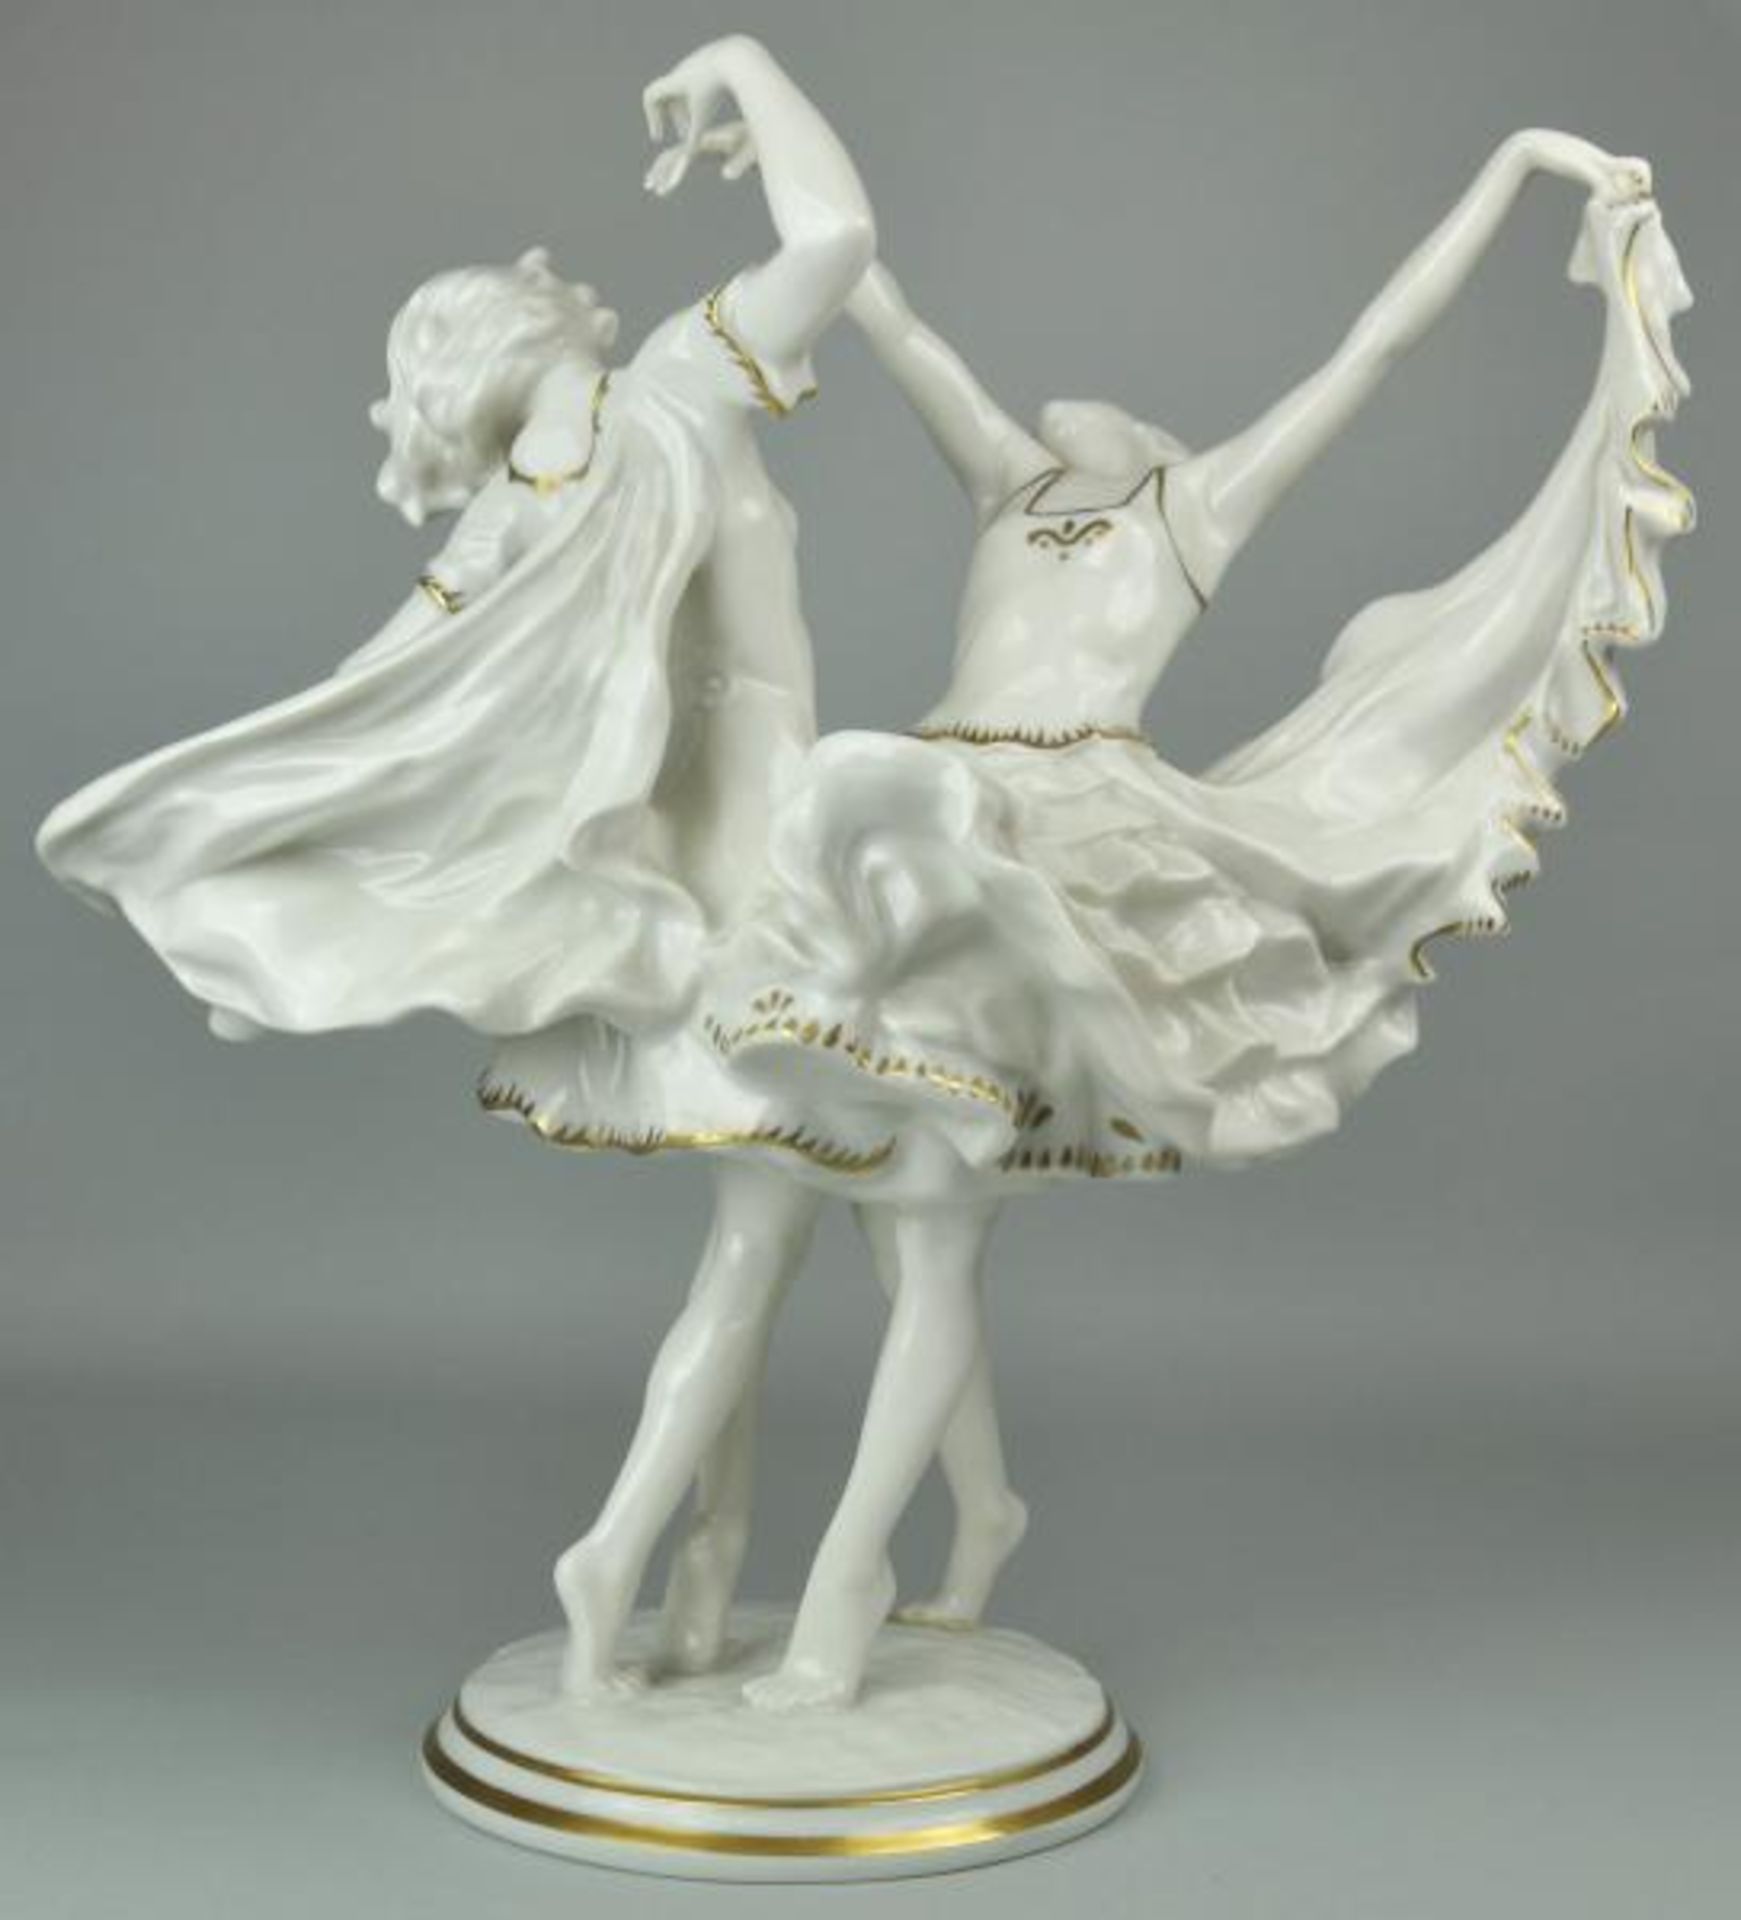 TÄNZERINNEN "Frühlingsreigen" zwei tanzende Mädchen mit fliegenden Tanzröcken, wallender - Image 2 of 4